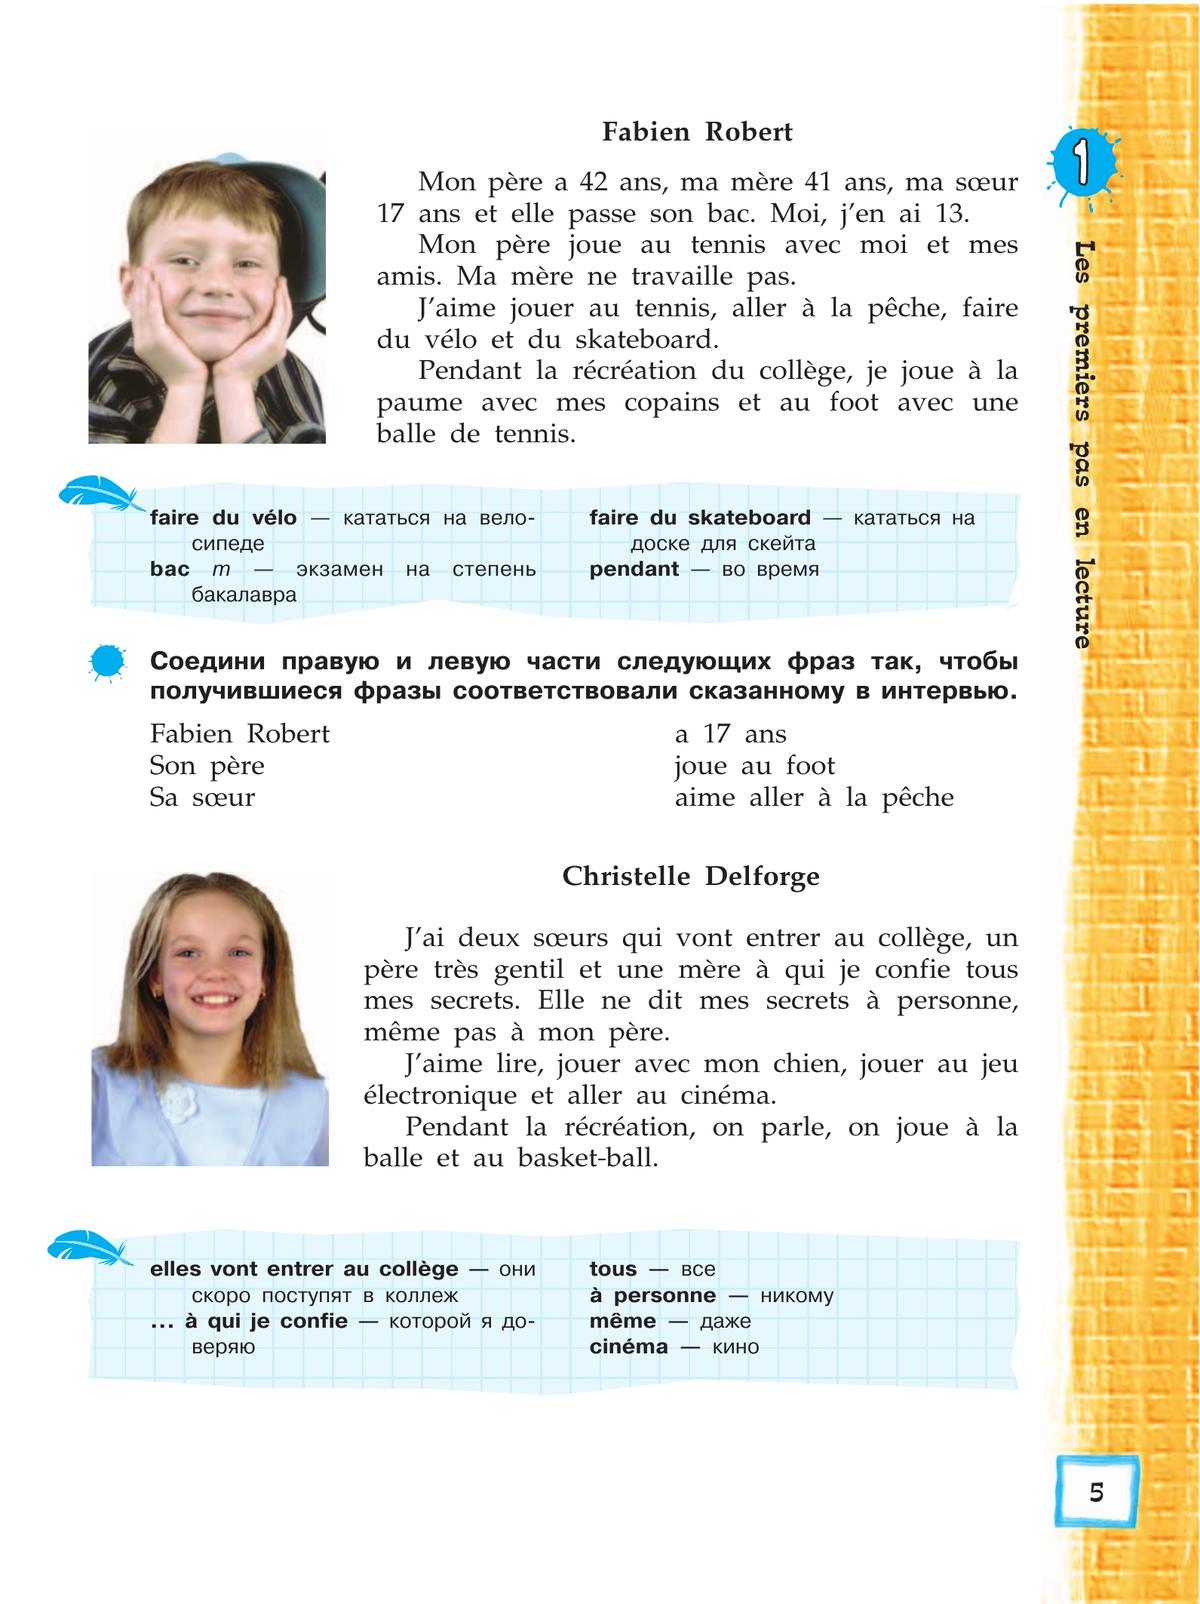 Французский язык. Второй иностранный язык. Книга для чтения. 5 класс 4